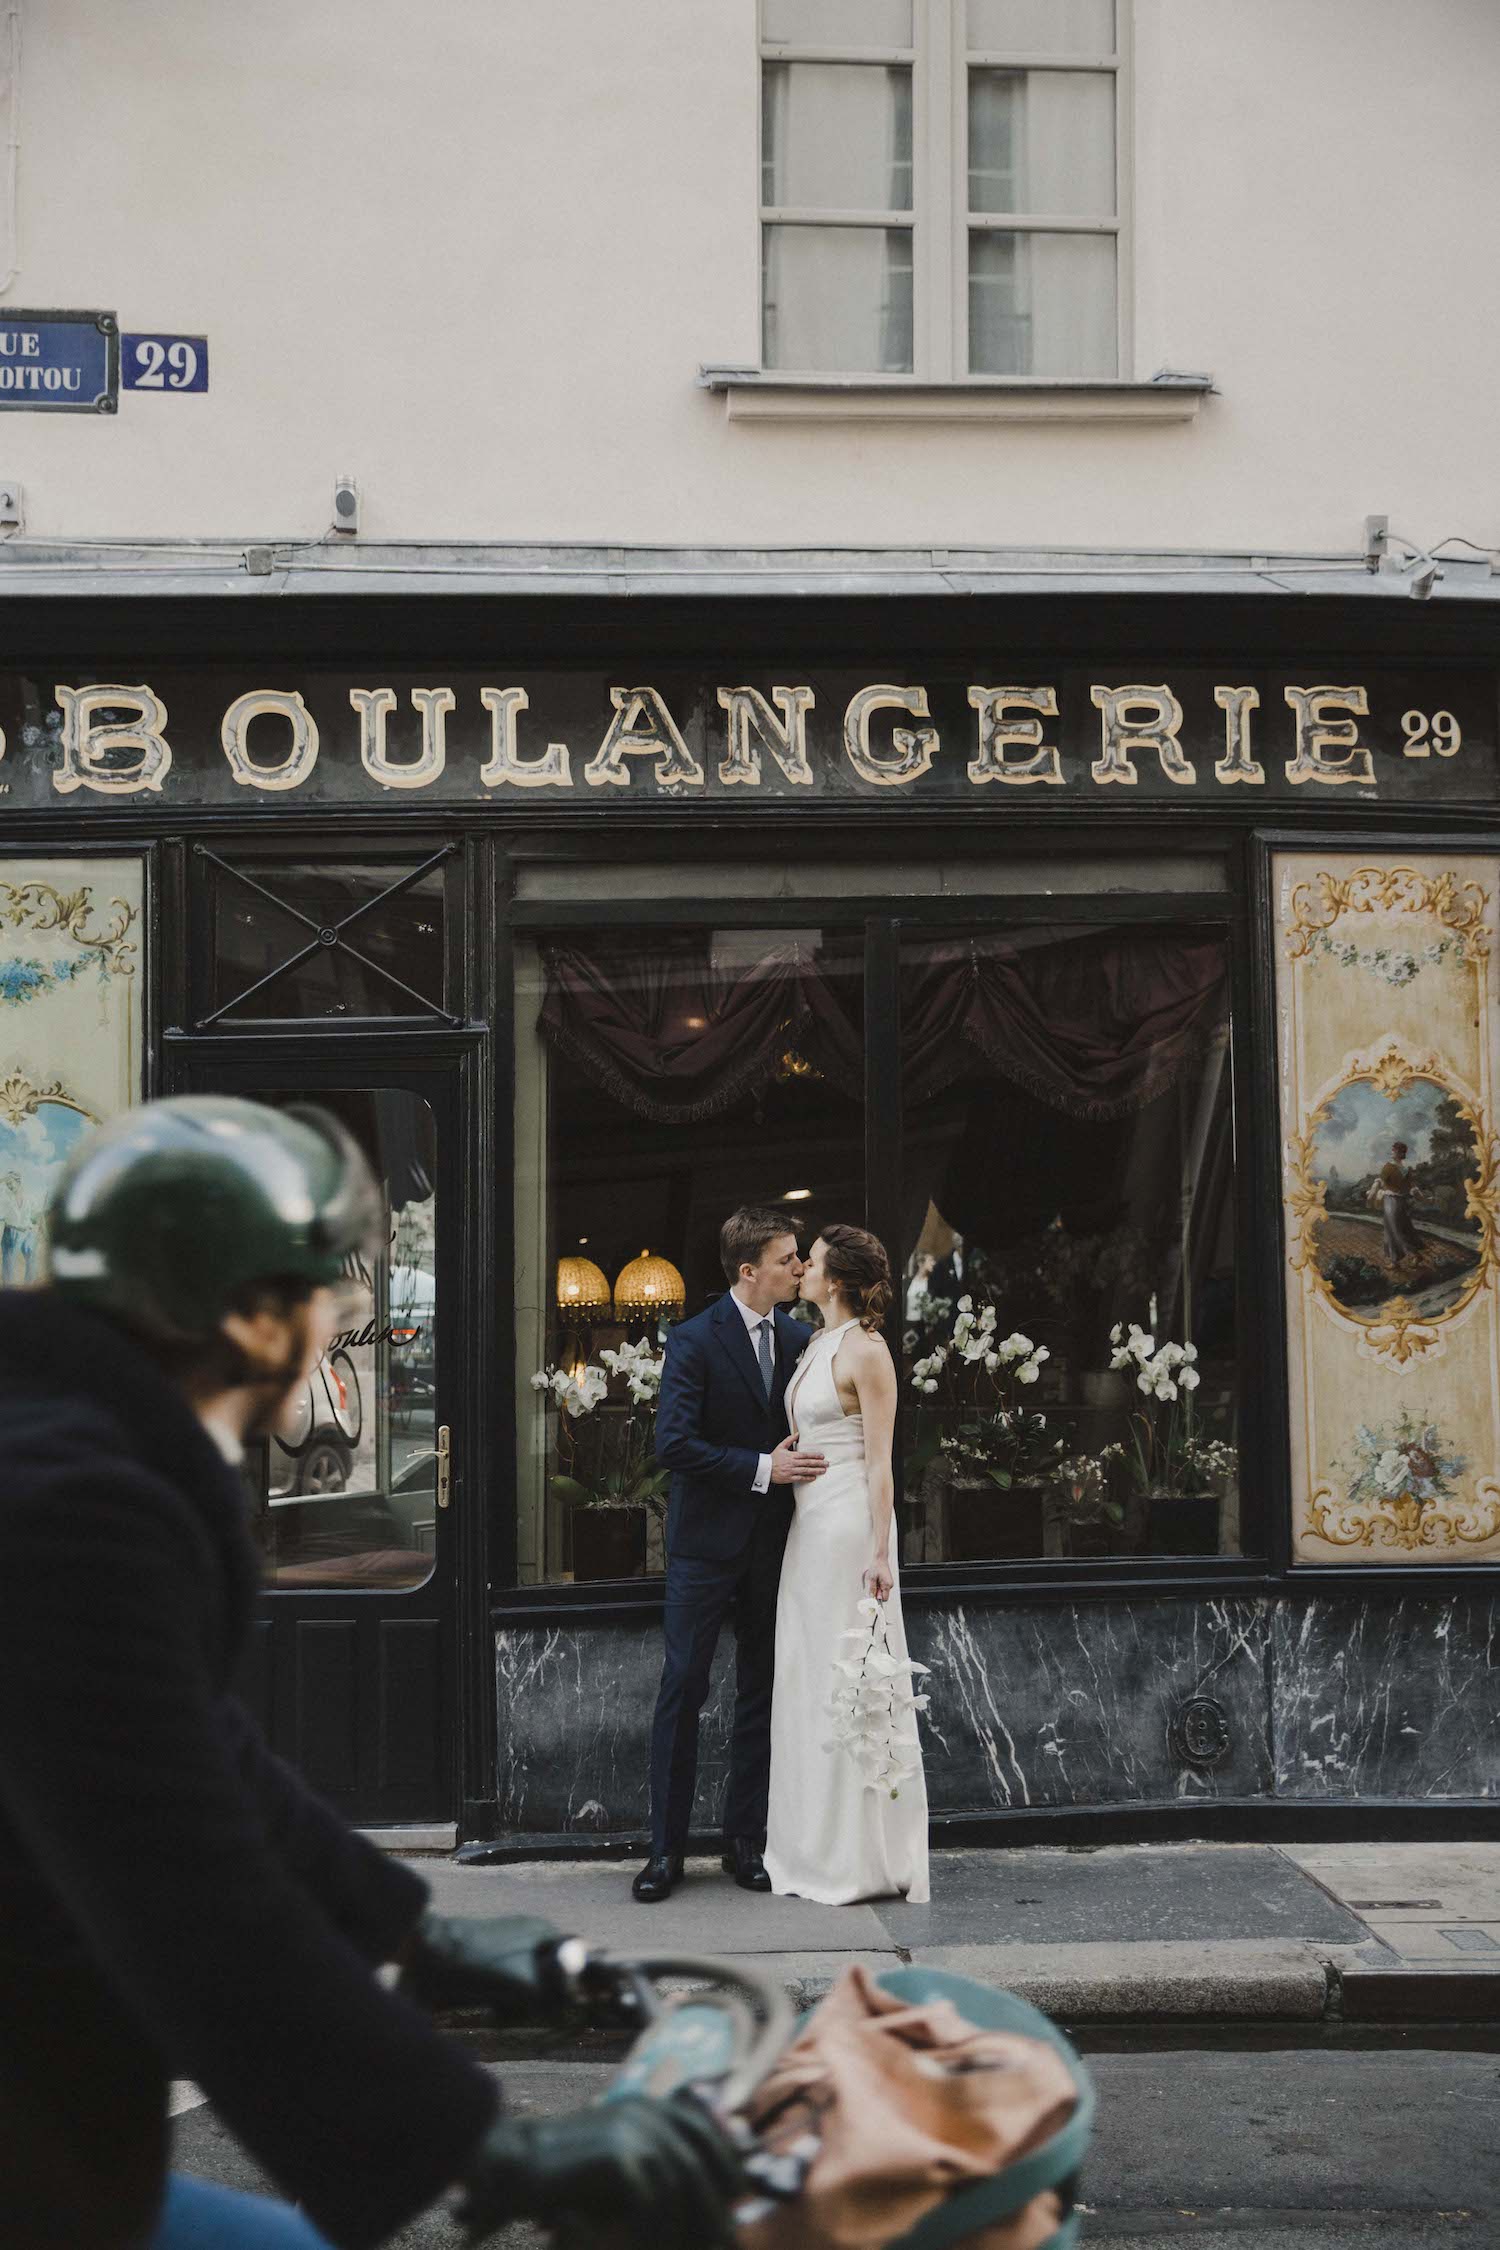 Mariage intime à Paris - Isabelle + Pierre - Blog Mariage Madame C